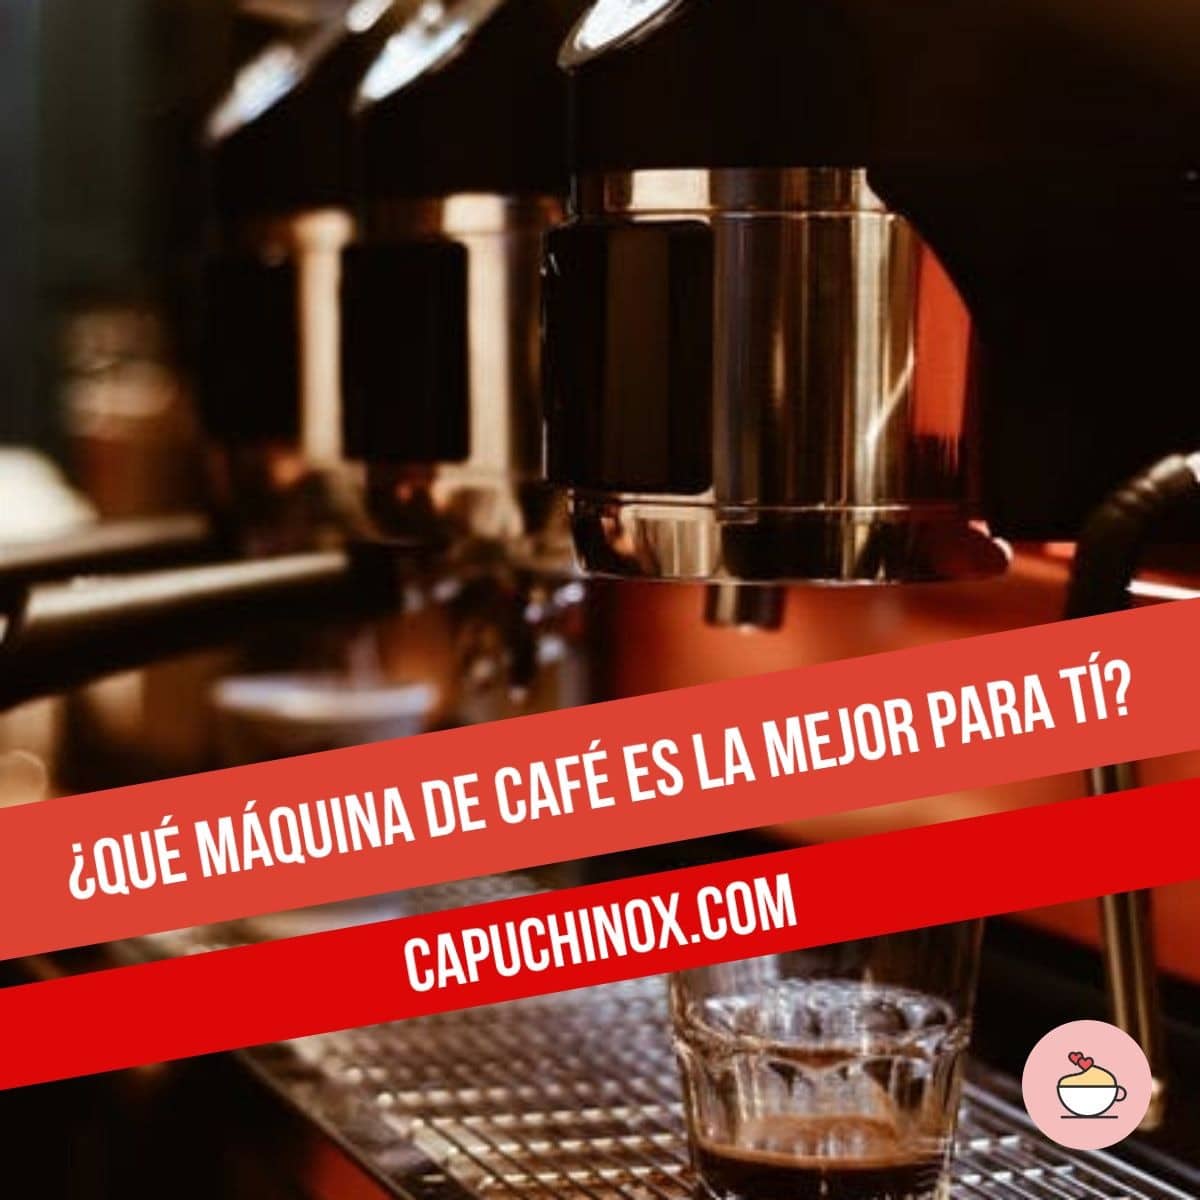 Guía de compra de mejores de café - Qué cafetera - Capuchinox.com